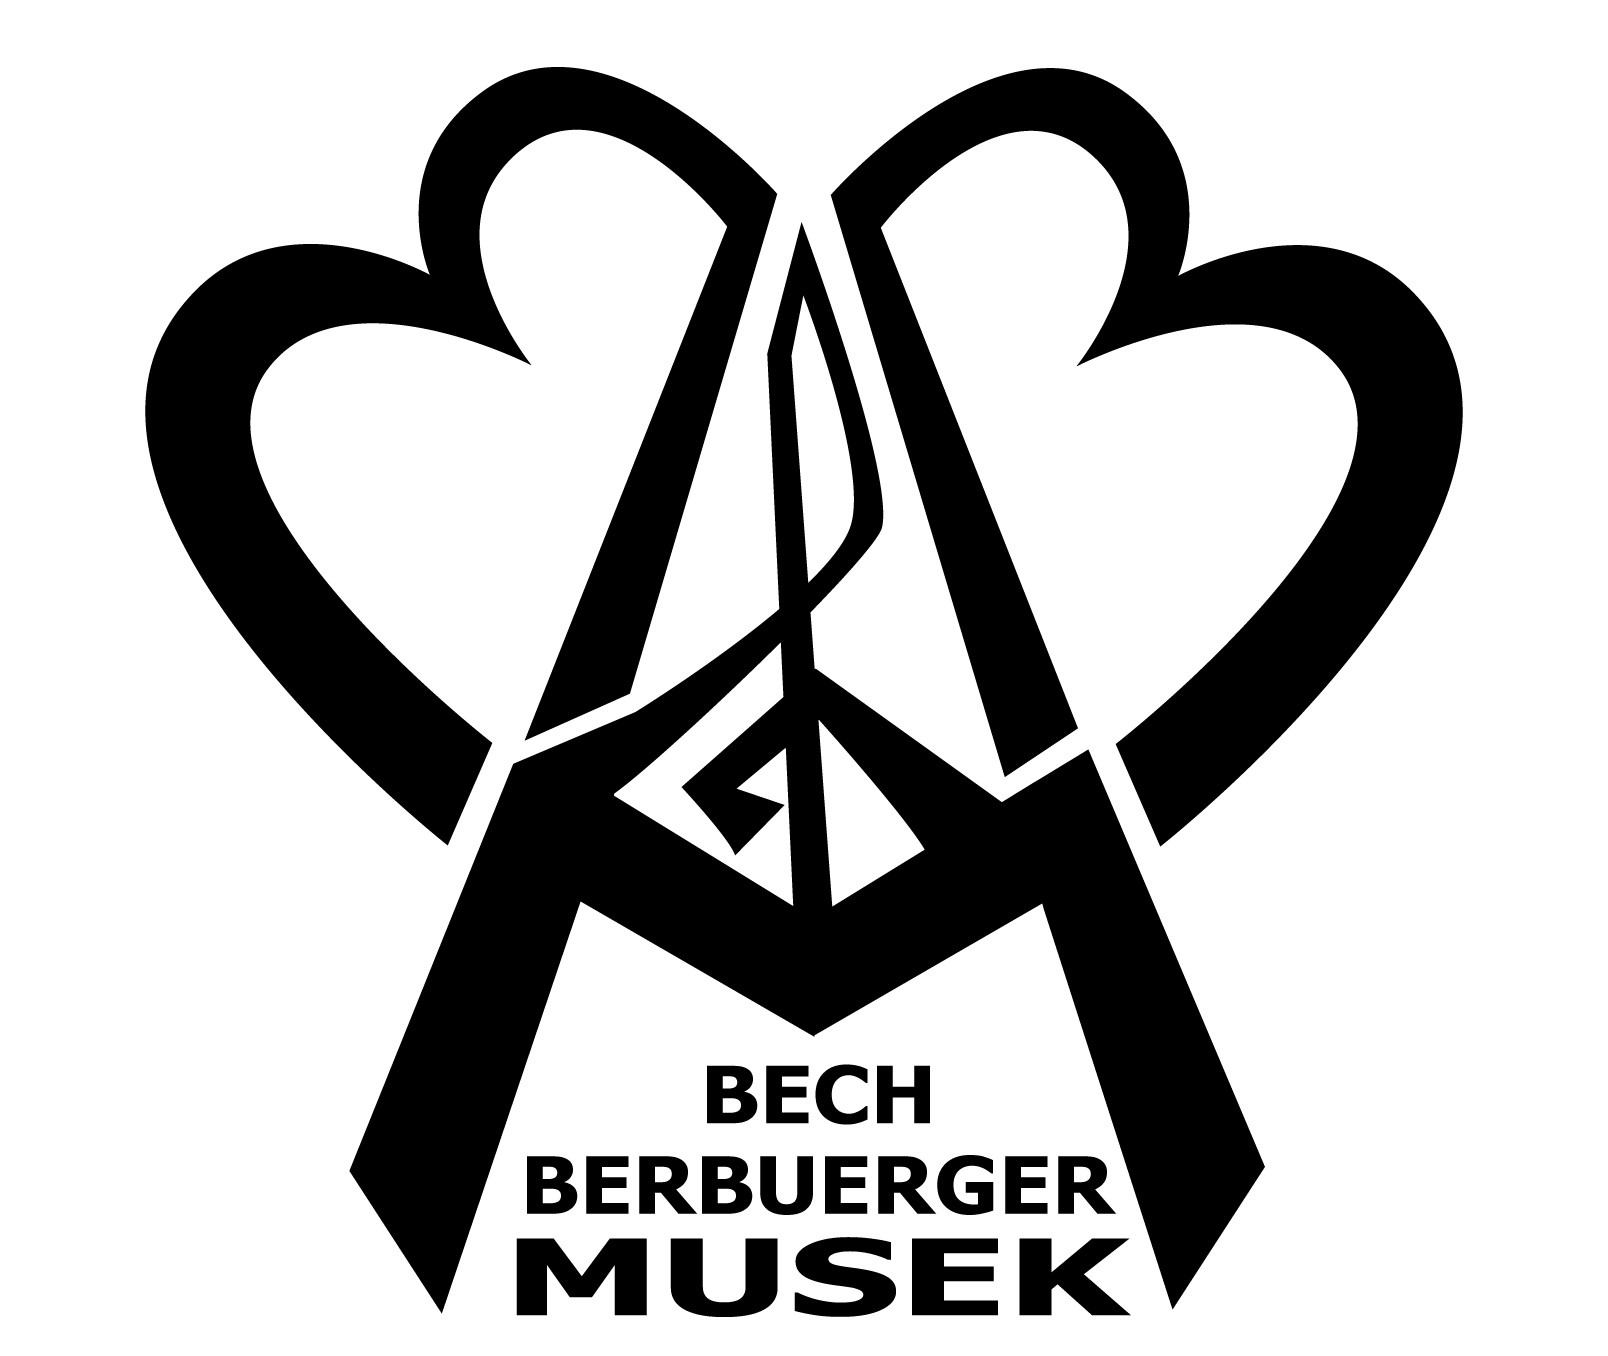 Bech-Berbuerger Musek